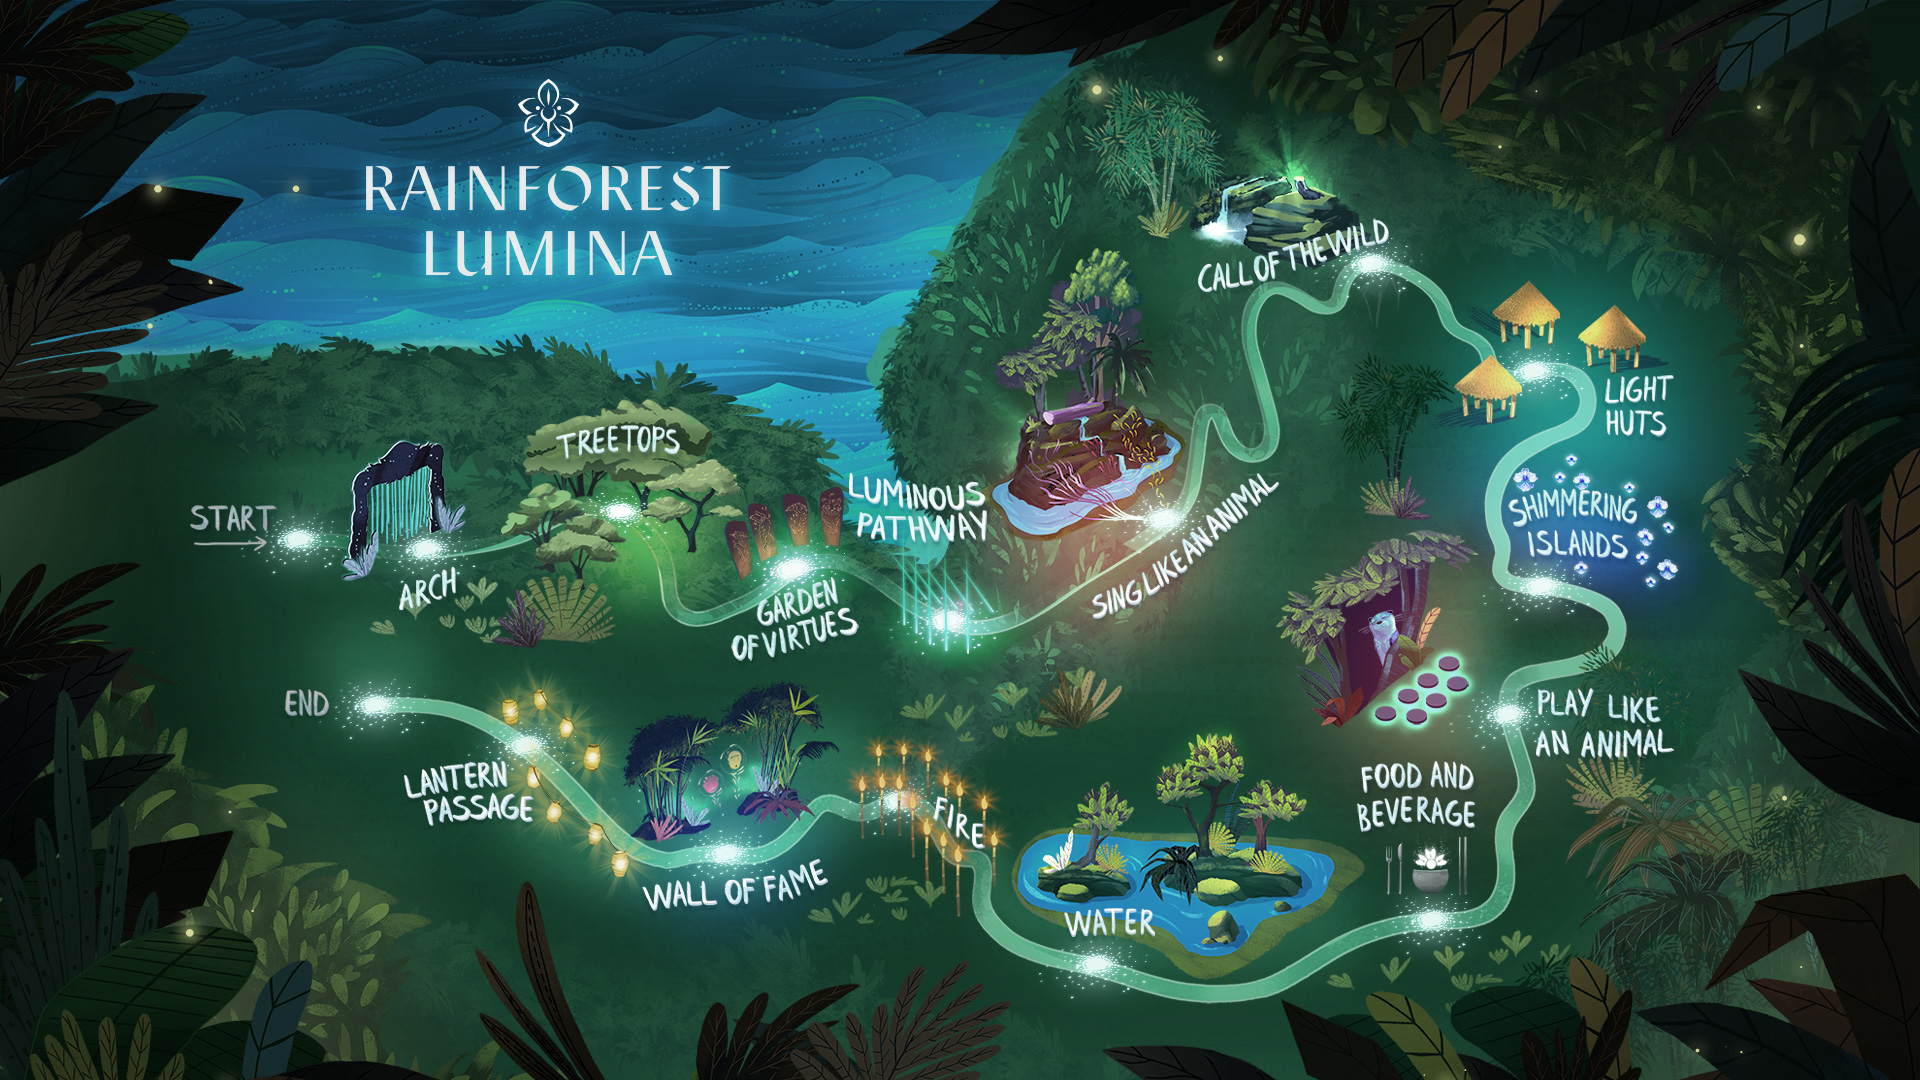 ศึกษาแผนที่เส้นทางเดินของ rainforest lumina จะเป็นวงกลม เริ่มและกลับมาบรรจบในที่เดิม ในความมืดมิดไม่ต้องกลัวหลงเพราะจะมีแสงไฟคอยนำทางไปเรื่อยๆ มีเจ้าหน้าที่คอยประจำจุดต่างๆคอยให้คำแนะนำ 